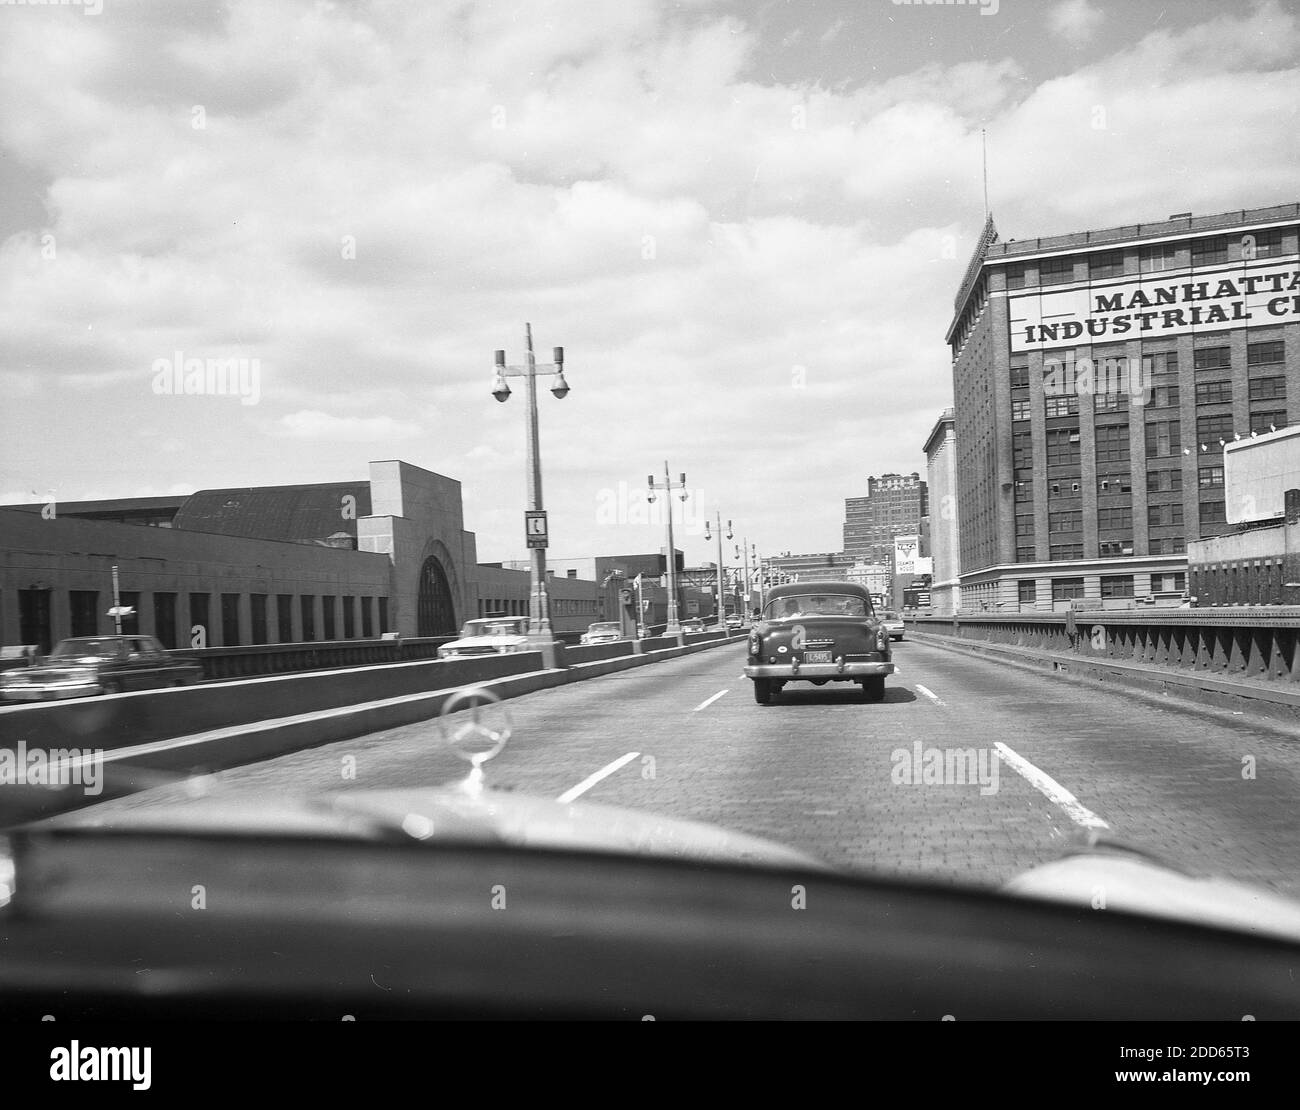 Historische Automobile aus den 1960er Jahren auf einer kopfsteingepflasterten Brücke, die das große Gebäude des Manhattan Industrial Center in der West 15th Street und 10th Avenue in New York, USA, verbindet. Das Gebiet des Industriezentrums war aufgrund seiner historischen Geschäftstätigkeit als Fleischpackungsviertel bekannt. Stockfoto